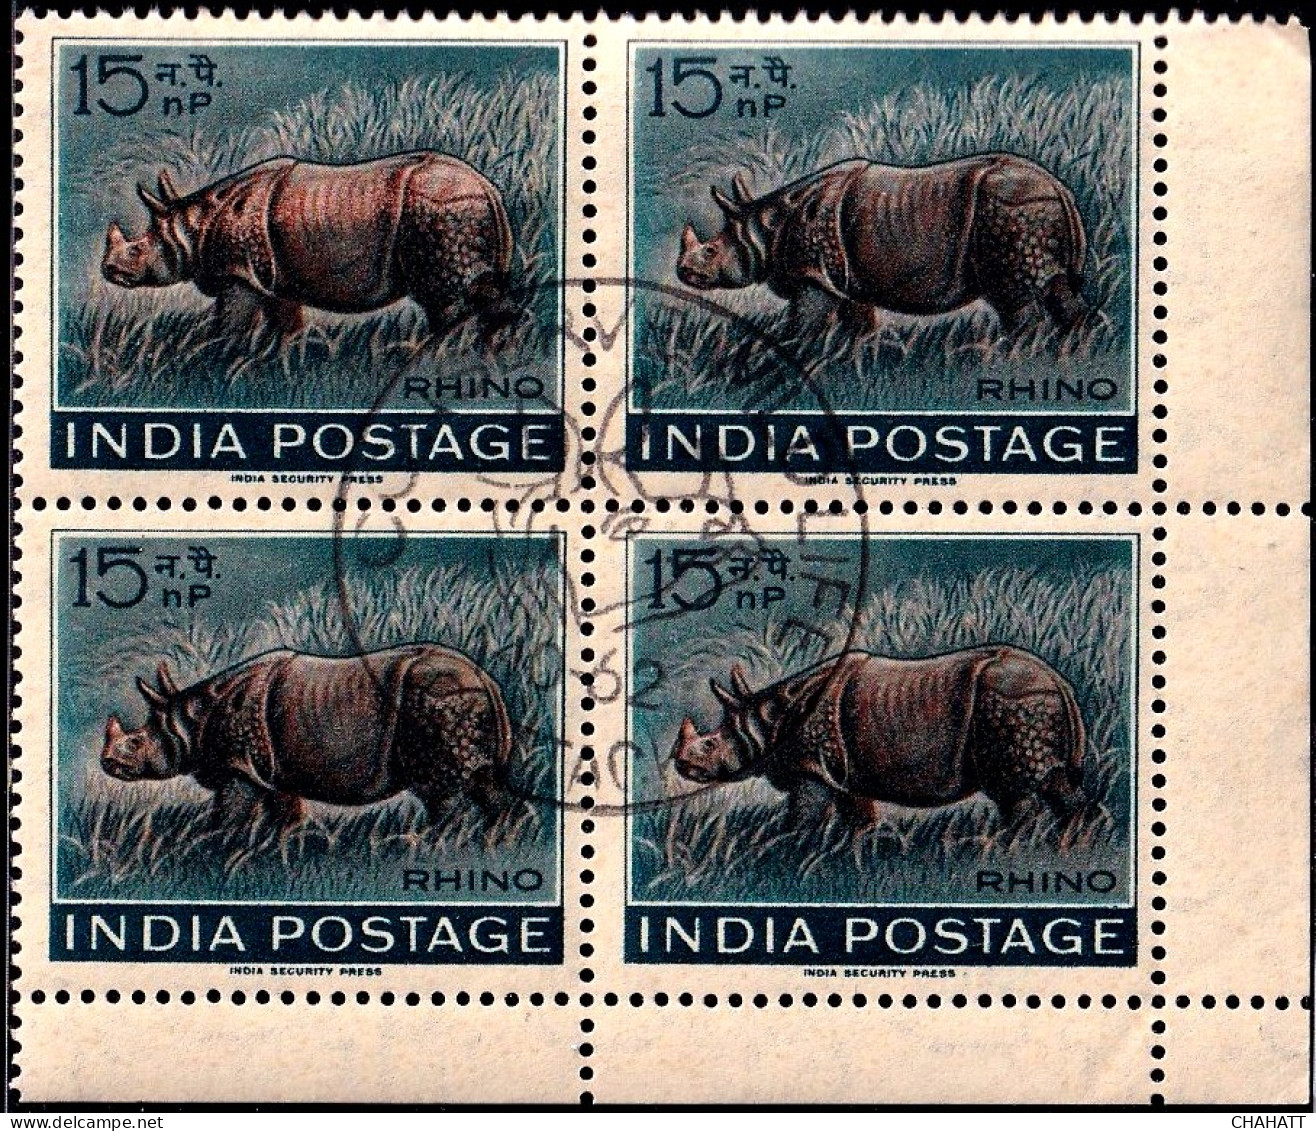 INDIA-1962- WILDLIFE WEEK- RHINOCEROS- BLOCK OF 4 WITH PICTORIAL CANCEL- ERROR-DRY PRINT-"BHARAT" OMITTED-MNH-IE-66-3 - Abarten Und Kuriositäten